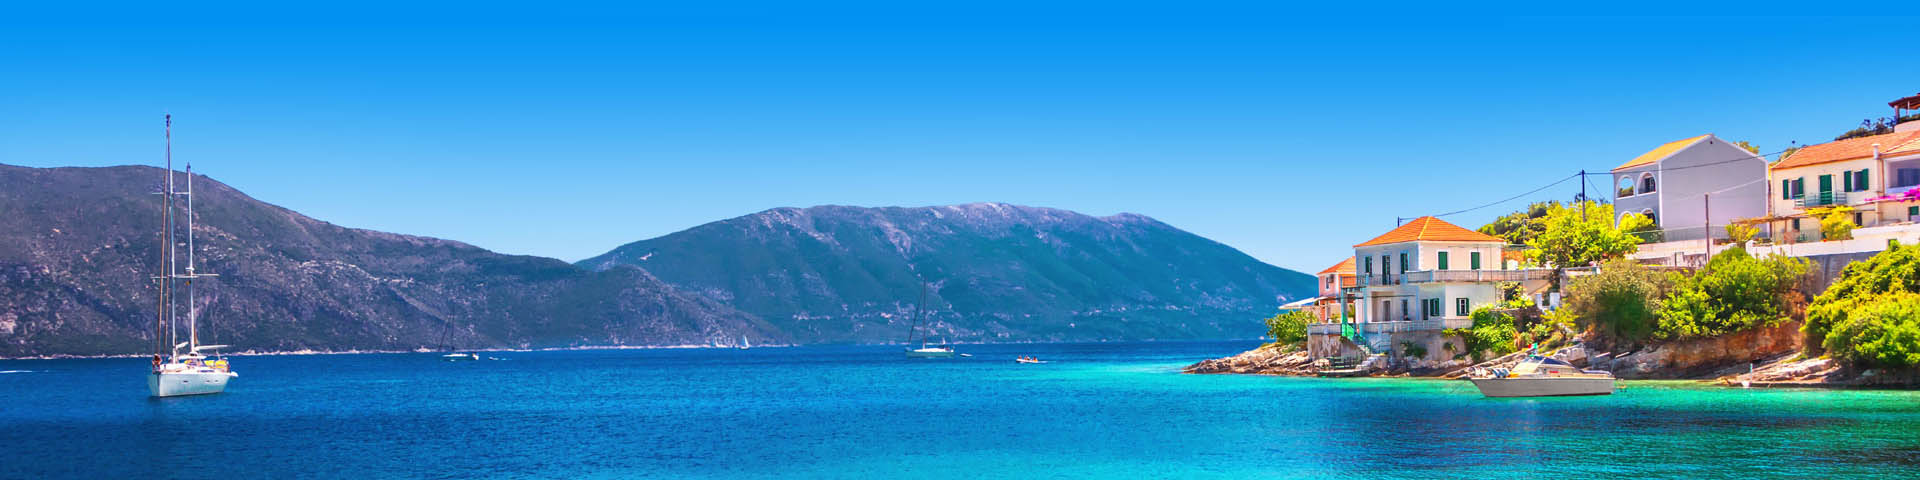 Het helderblauwe zeewater met bergen op de achtergrond tijdens de paasvakantie Kreta